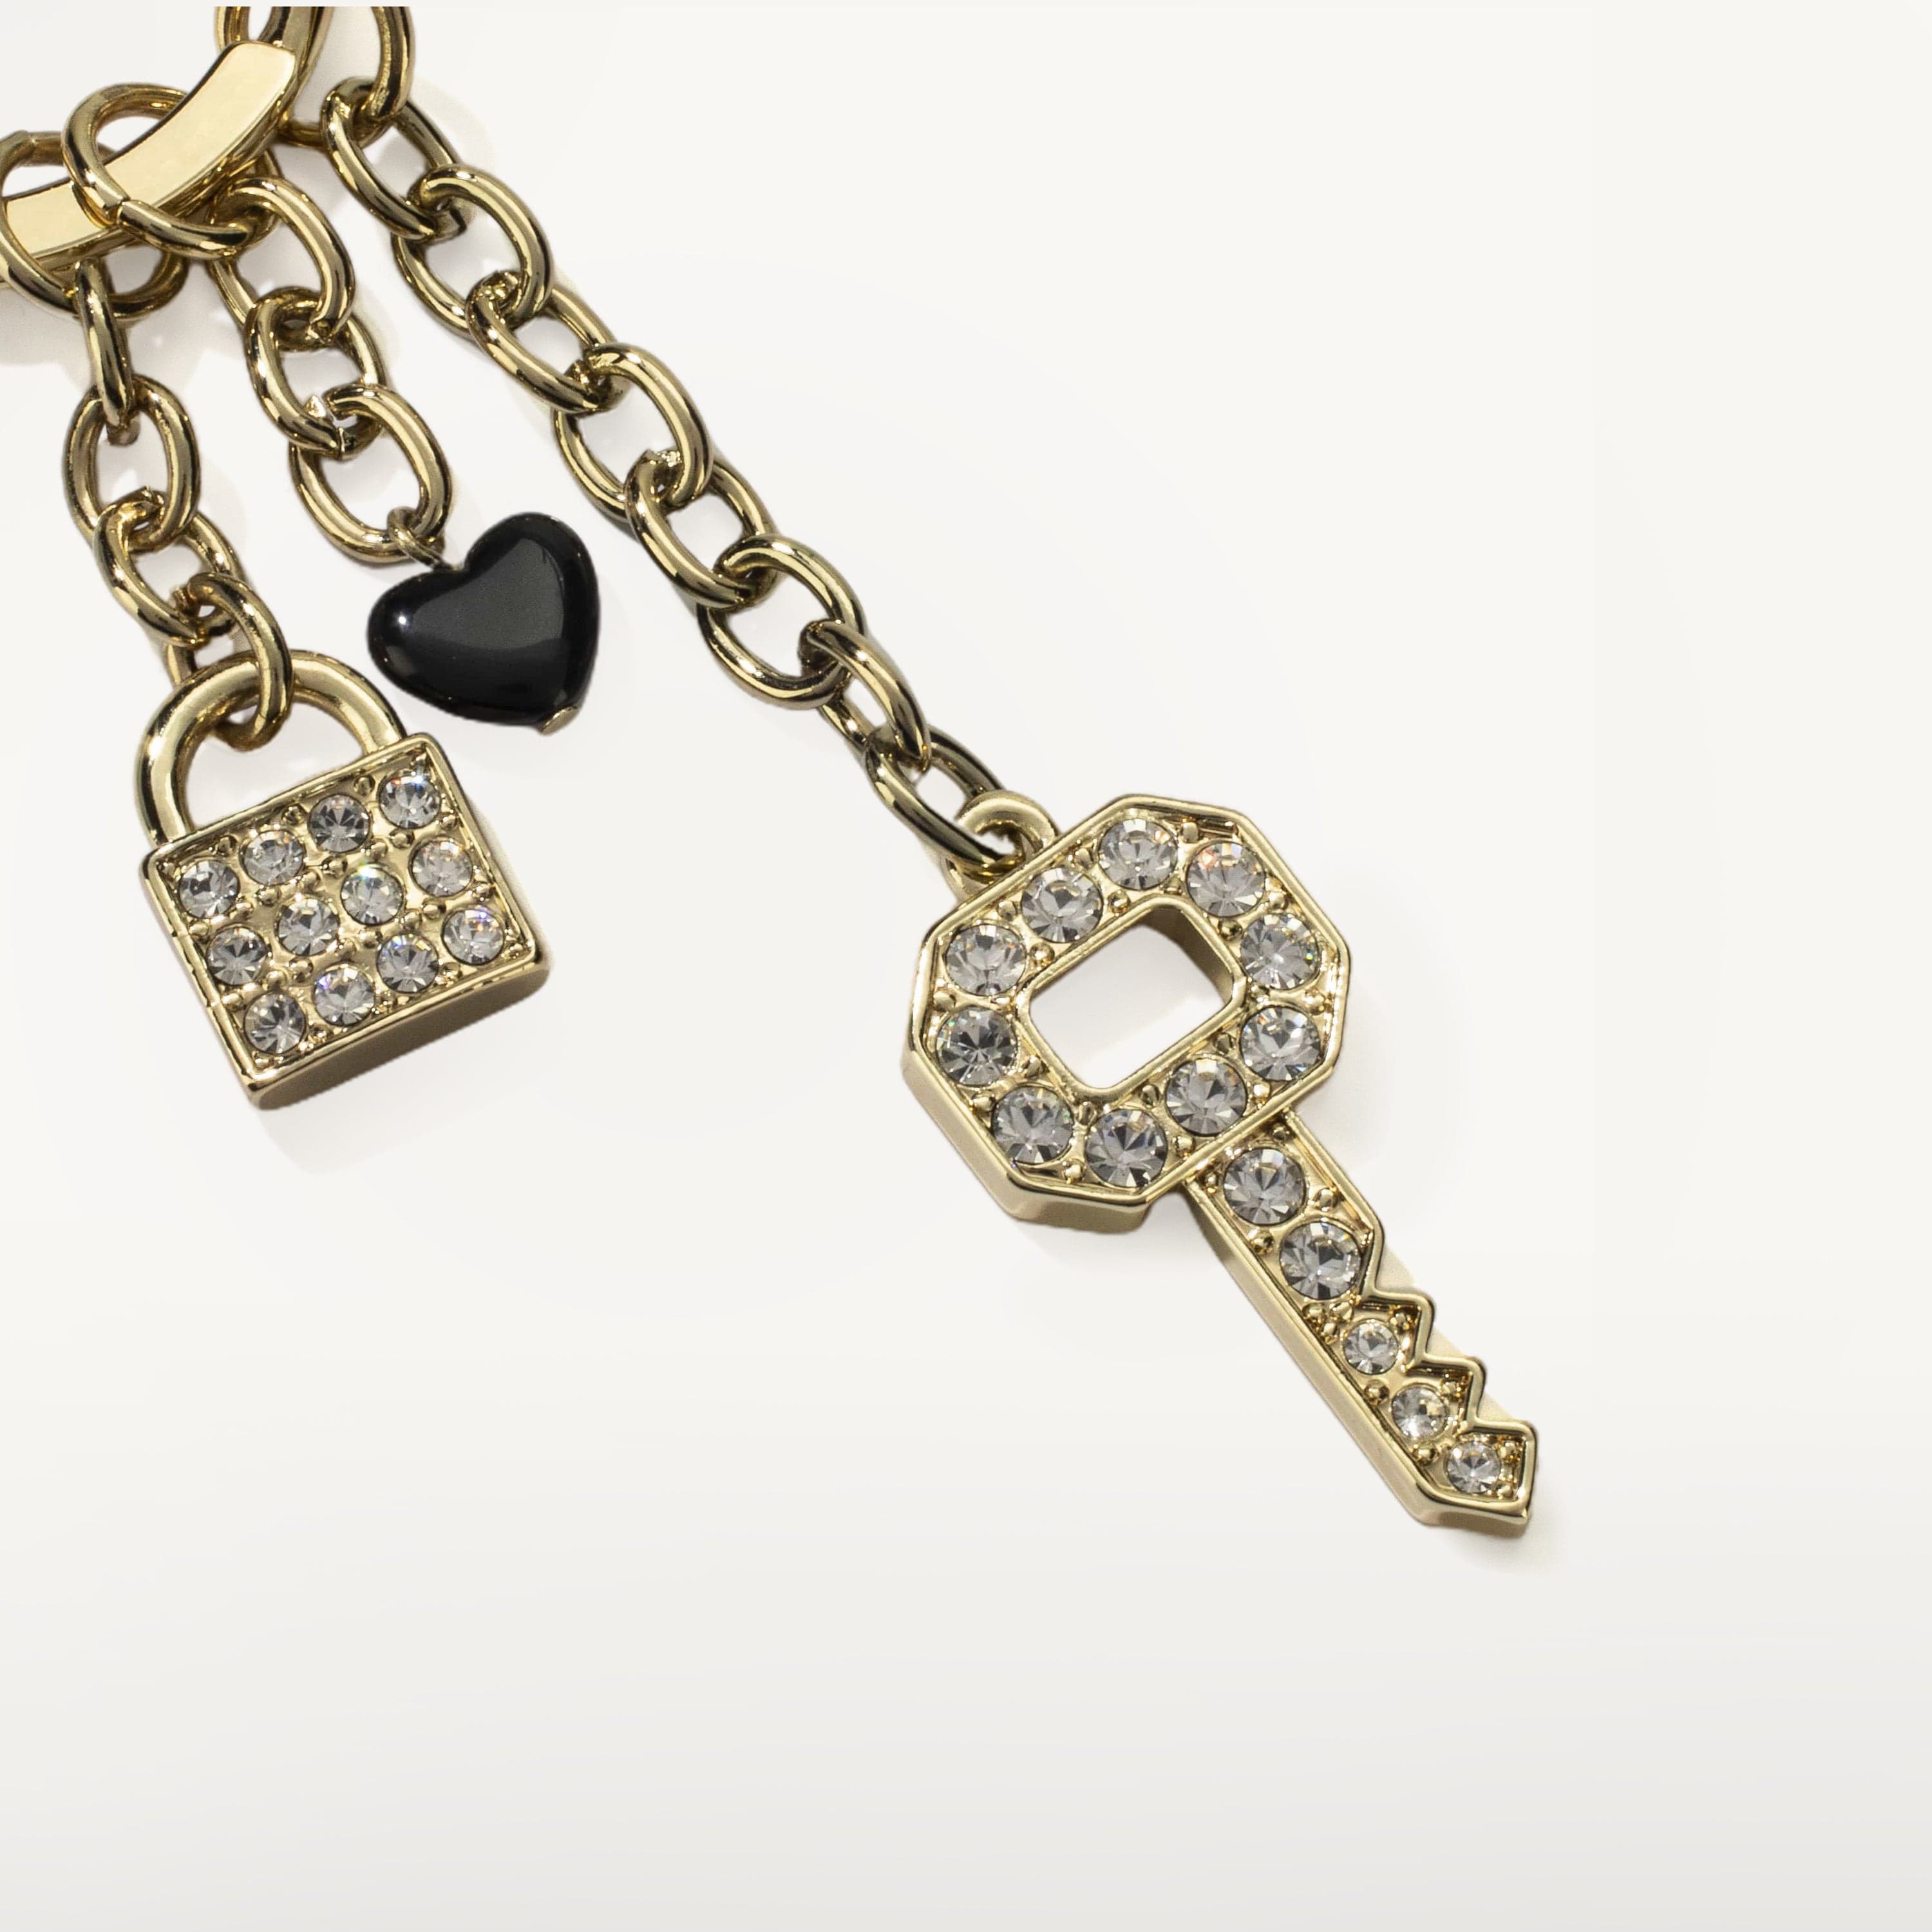 Kalifano Crystal Keychains Key with Lock Keychain made with Swarovski Crystals SKC-185